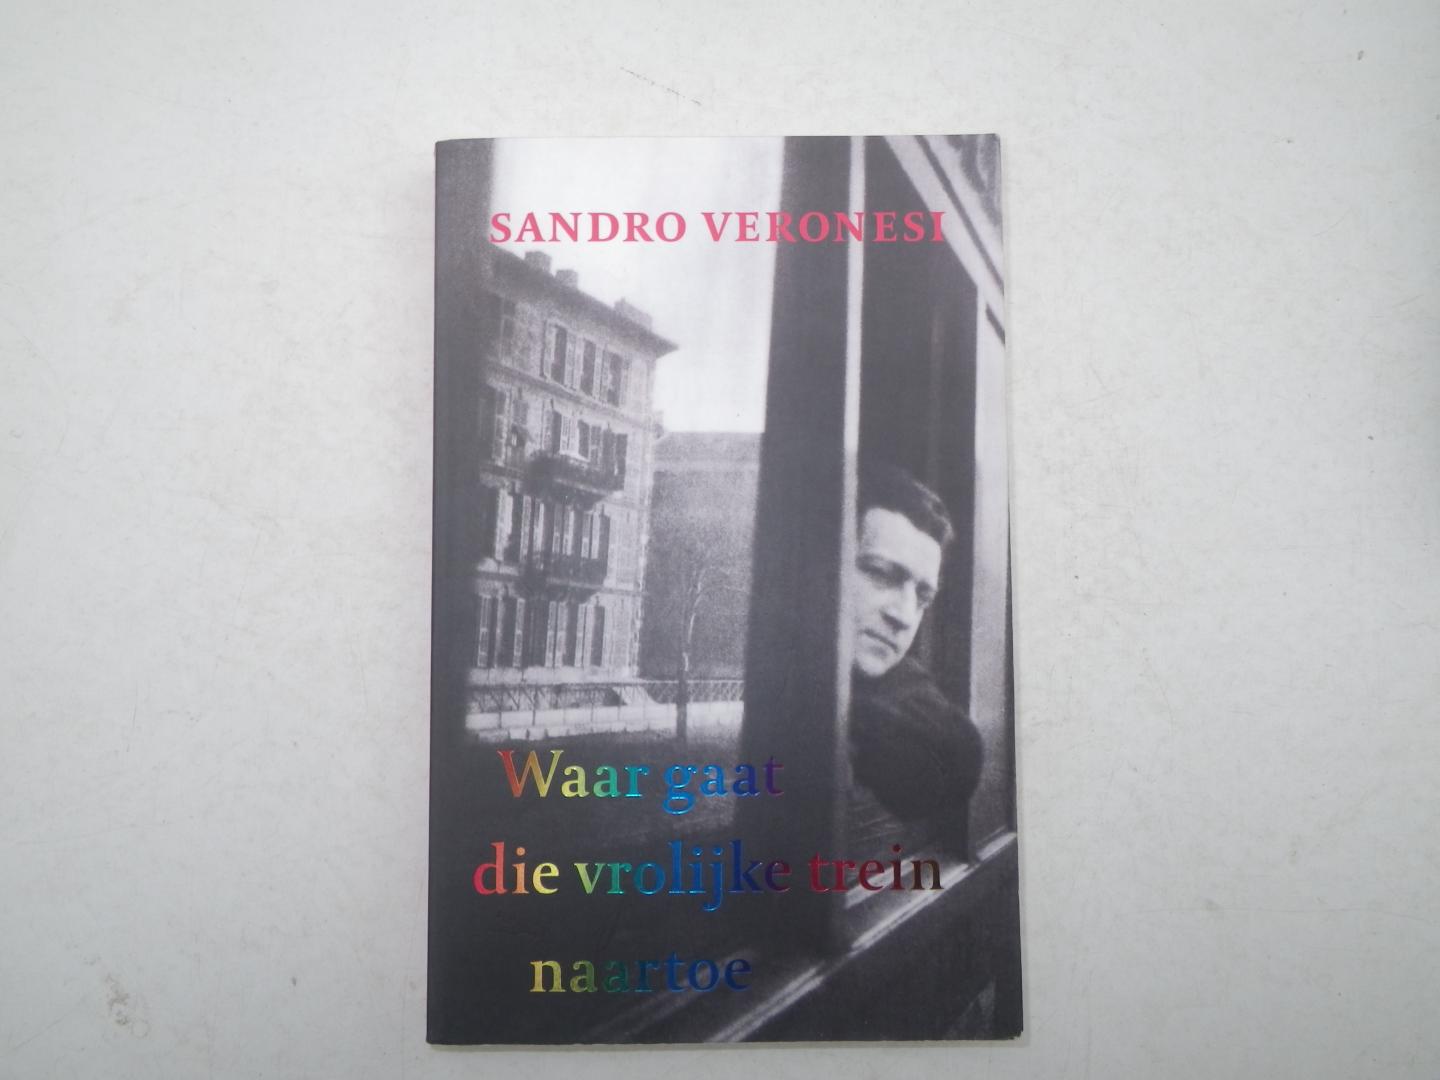 Sandro Veronesi - Waar gaat die vrolijke trein naartoe